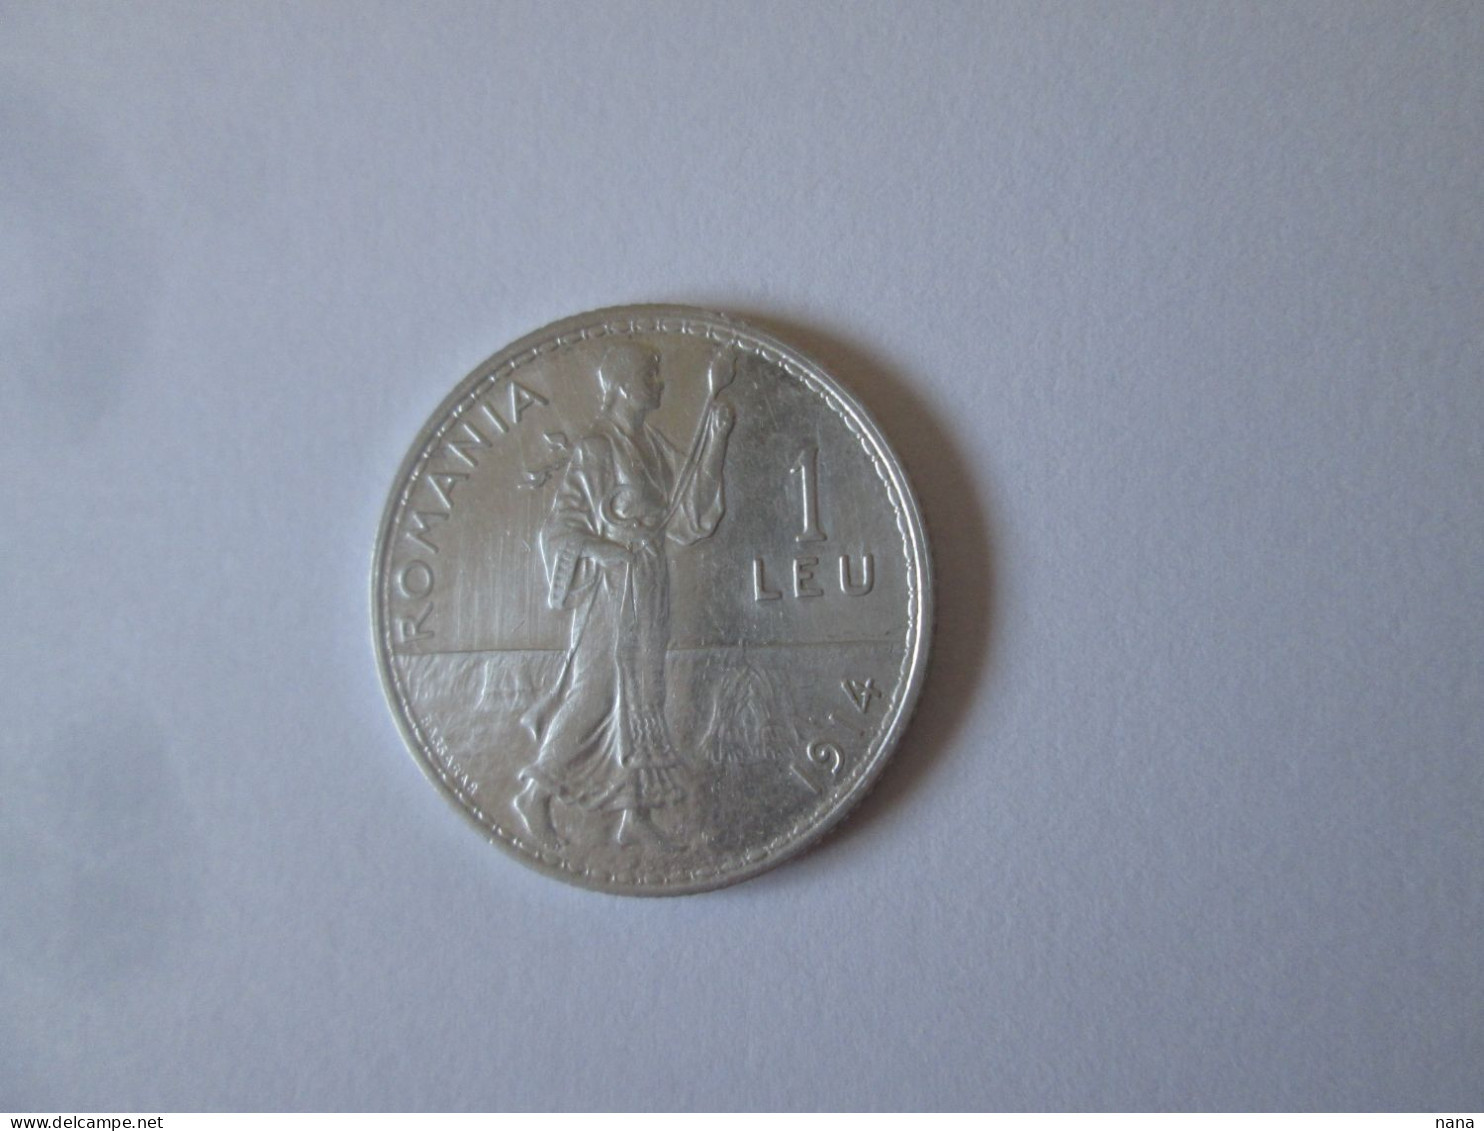 Roumanie 1 Leu 1914 Argent Tres Belle Piece/Romania 1 Leu 1914 Silver Very Nice Coin - Romania